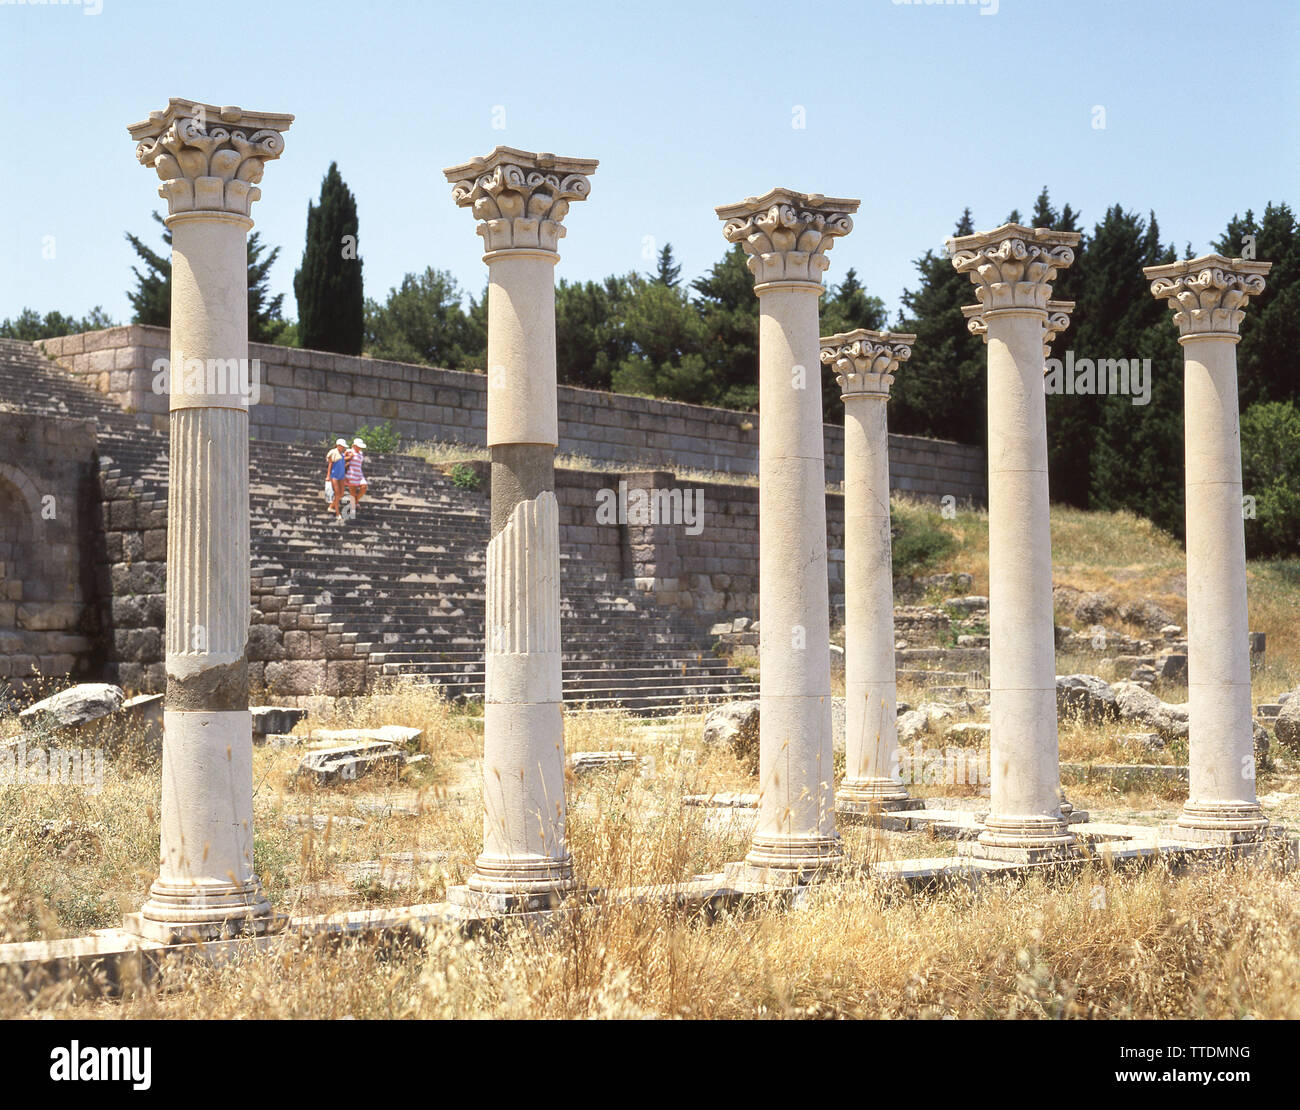 Colonnes corinthiennes sur la terrasse médiane de l'Asklepieion, Plantini, Kos (Cos), du Dodécanèse, Grèce, région sud de la Mer Egée Banque D'Images